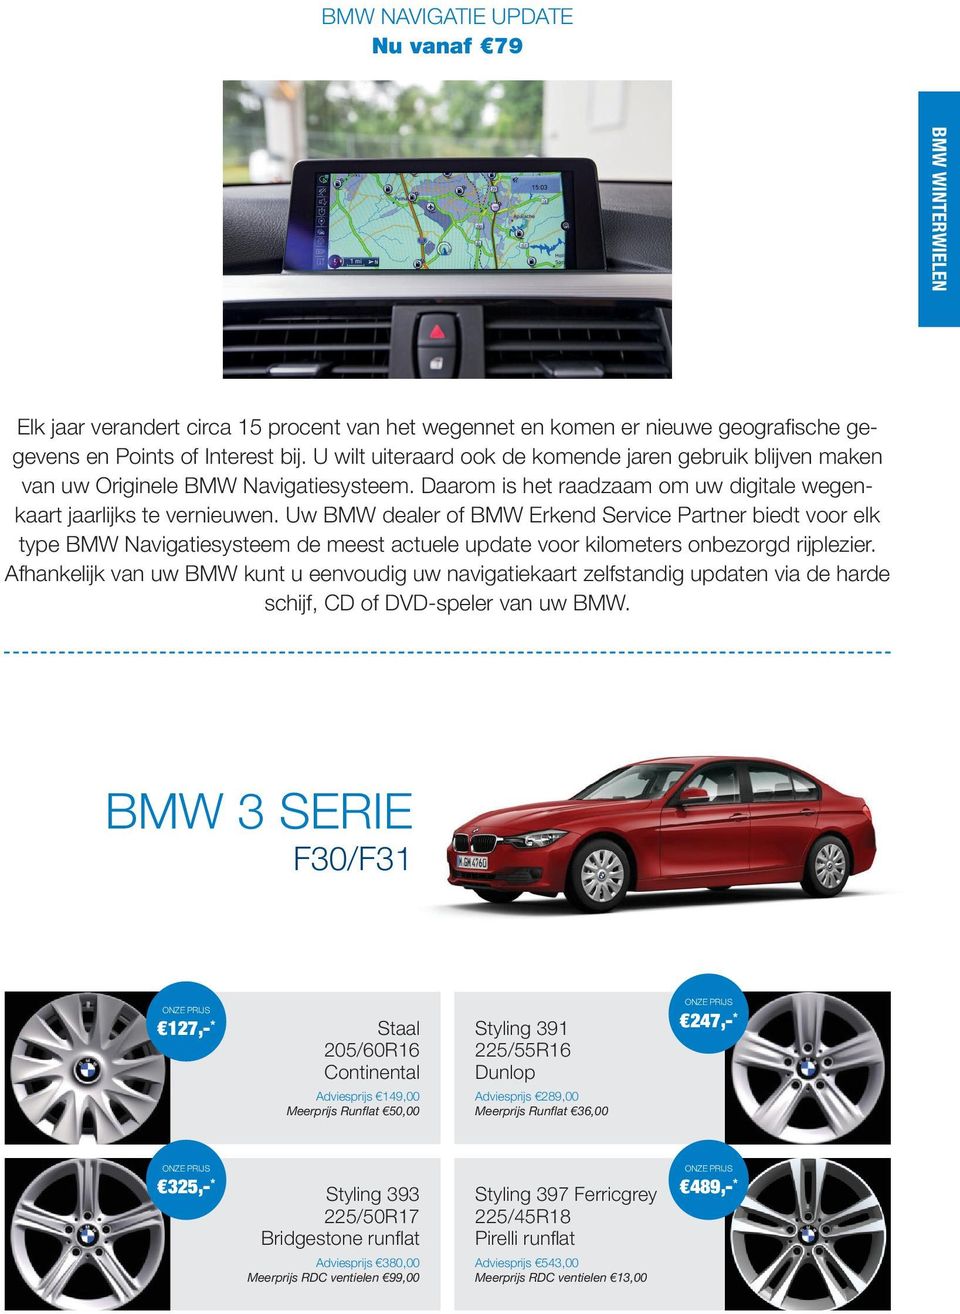 Uw BMW dealer of BMW Erkend Service Partner biedt voor elk type BMW Navigatiesysteem de meest actuele update voor kilometers onbezorgd rijplezier.